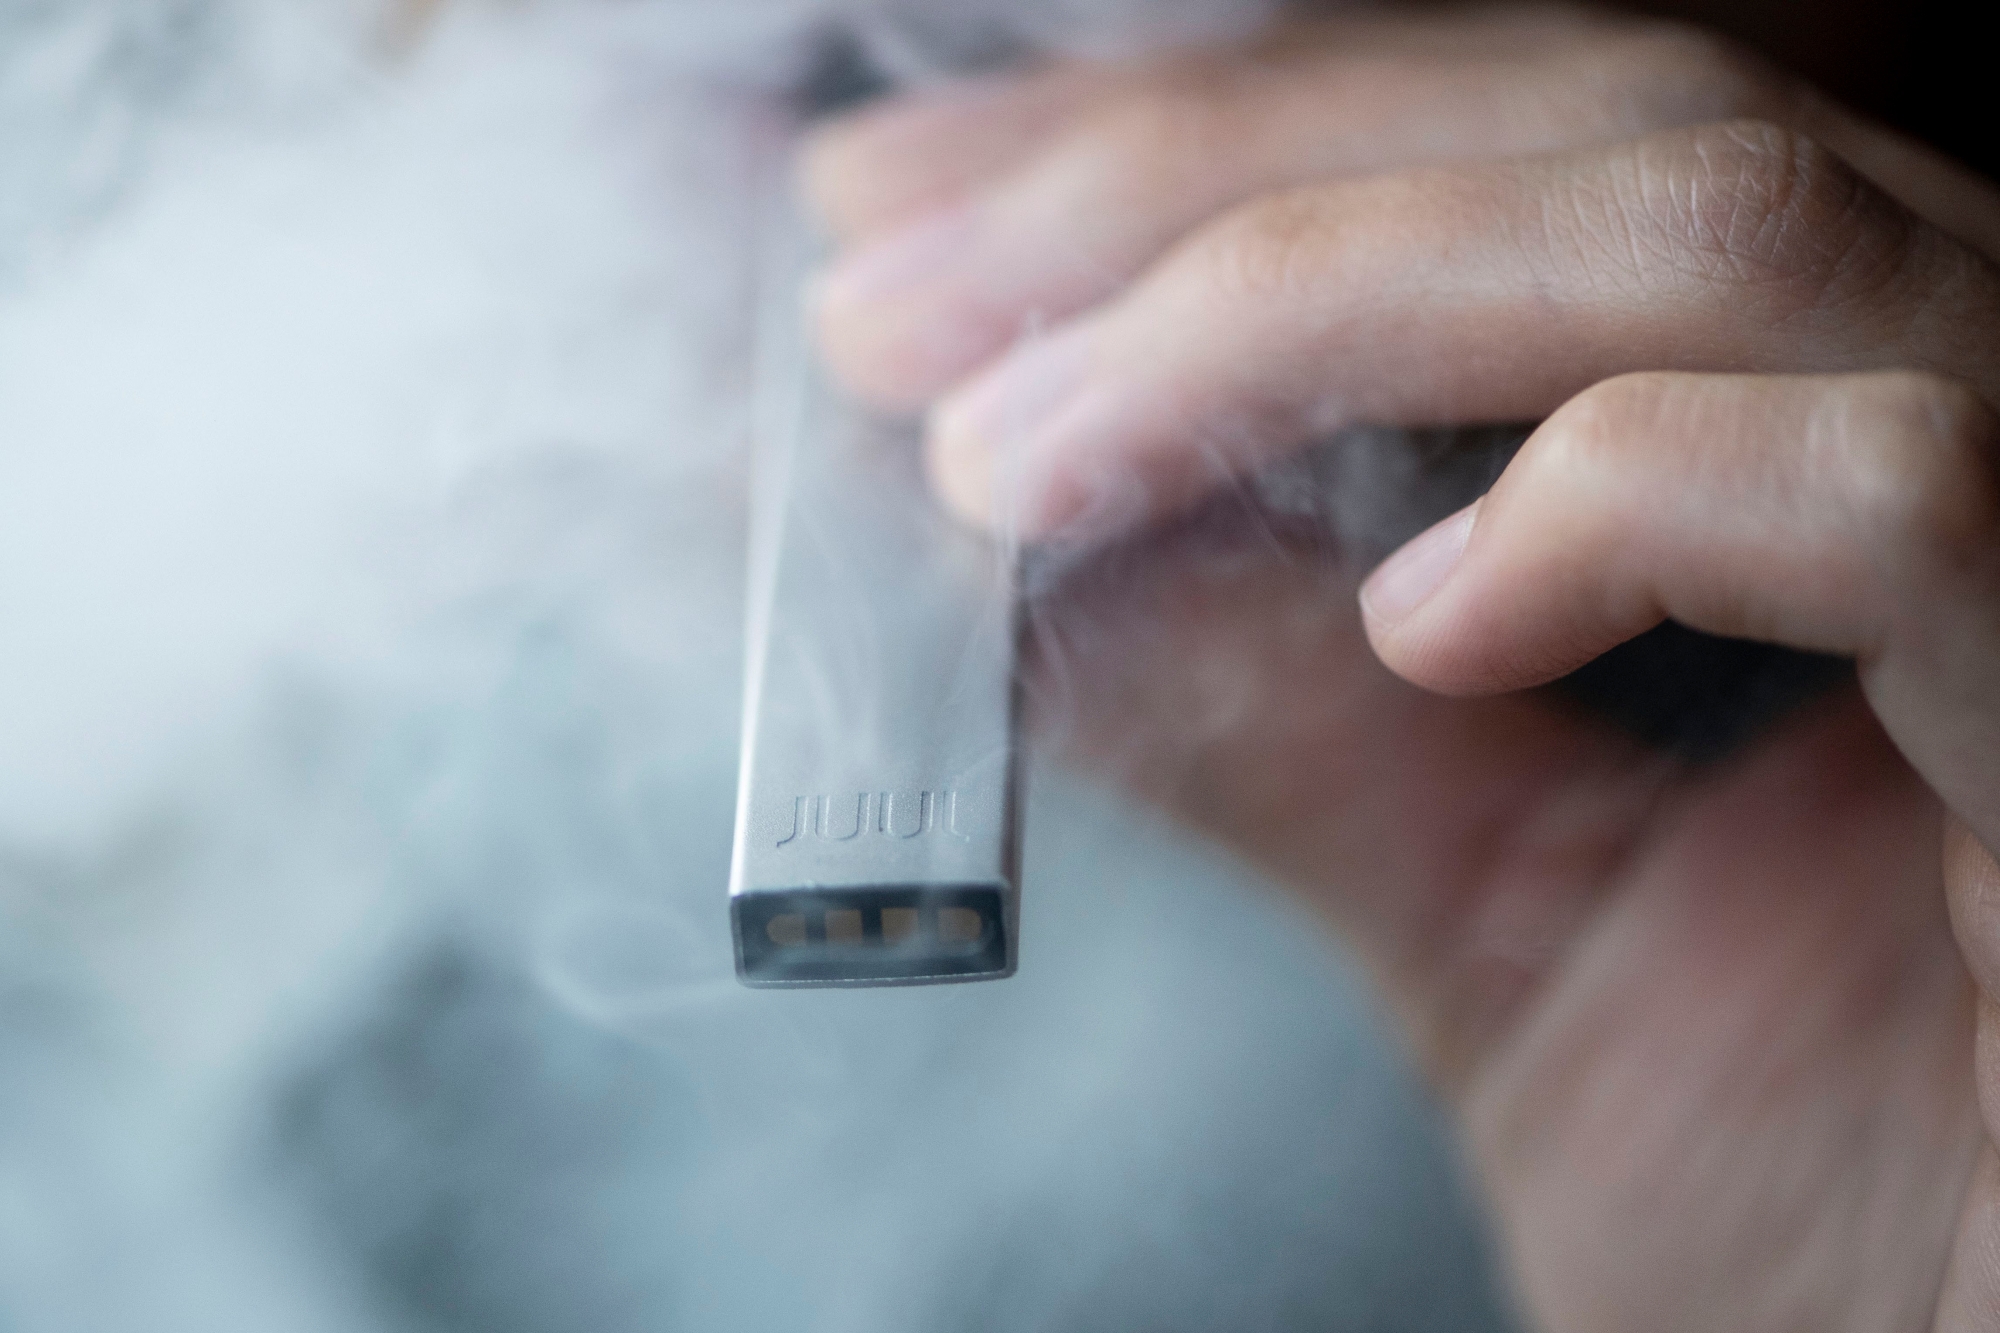 Eine Frau raucht ihre E-Zigarette Juul, aufgenommen am Dienstag, 4. Dezember 2018 in Zuerich. Juul wird heute in der Schweiz eingefuehrt. (KEYSTONE/Ennio Leanza) SCHWEIZ JUUL E-ZIGARETTE